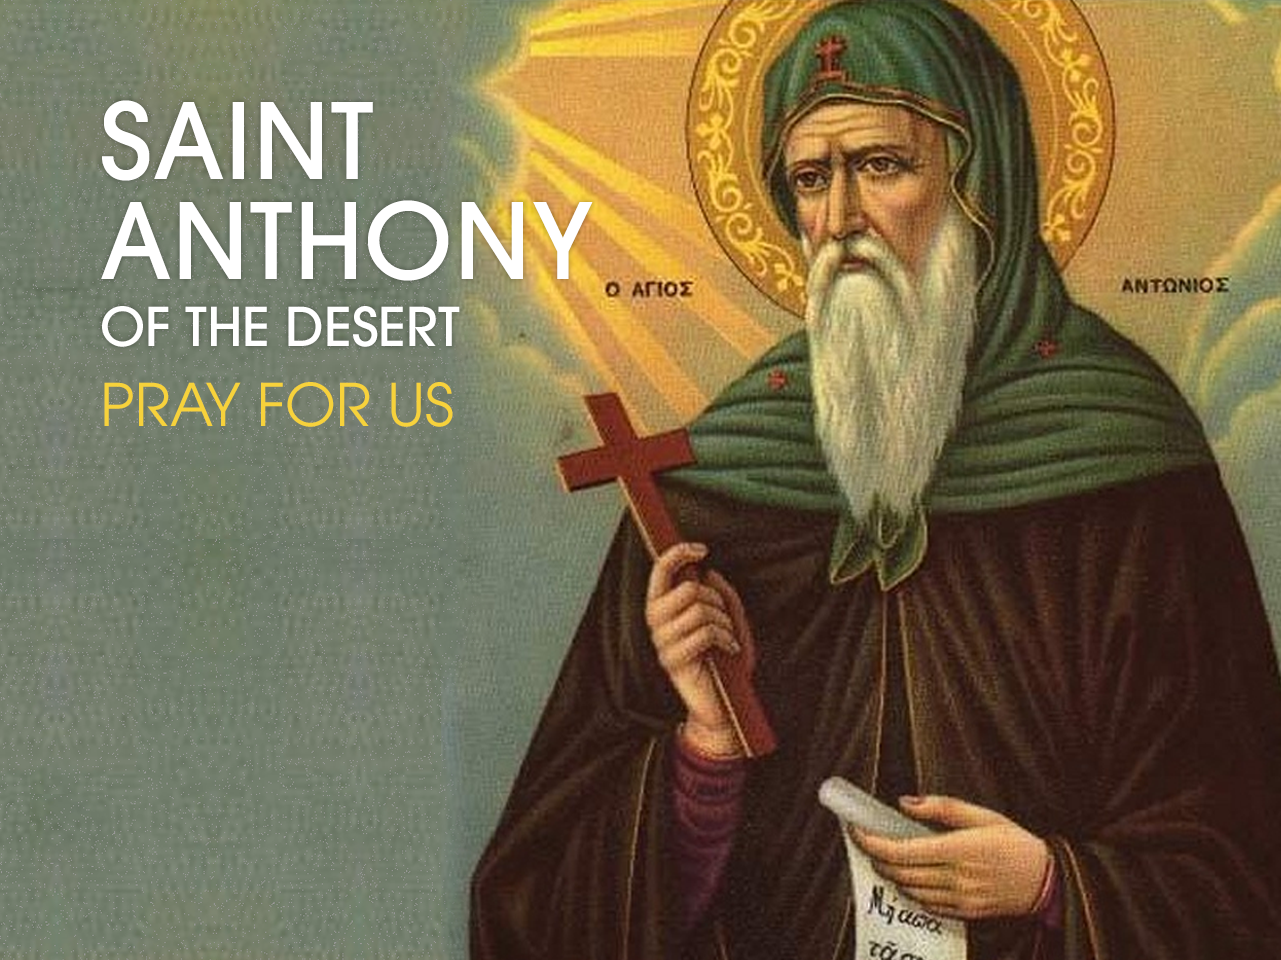 St. Antony of the Desert